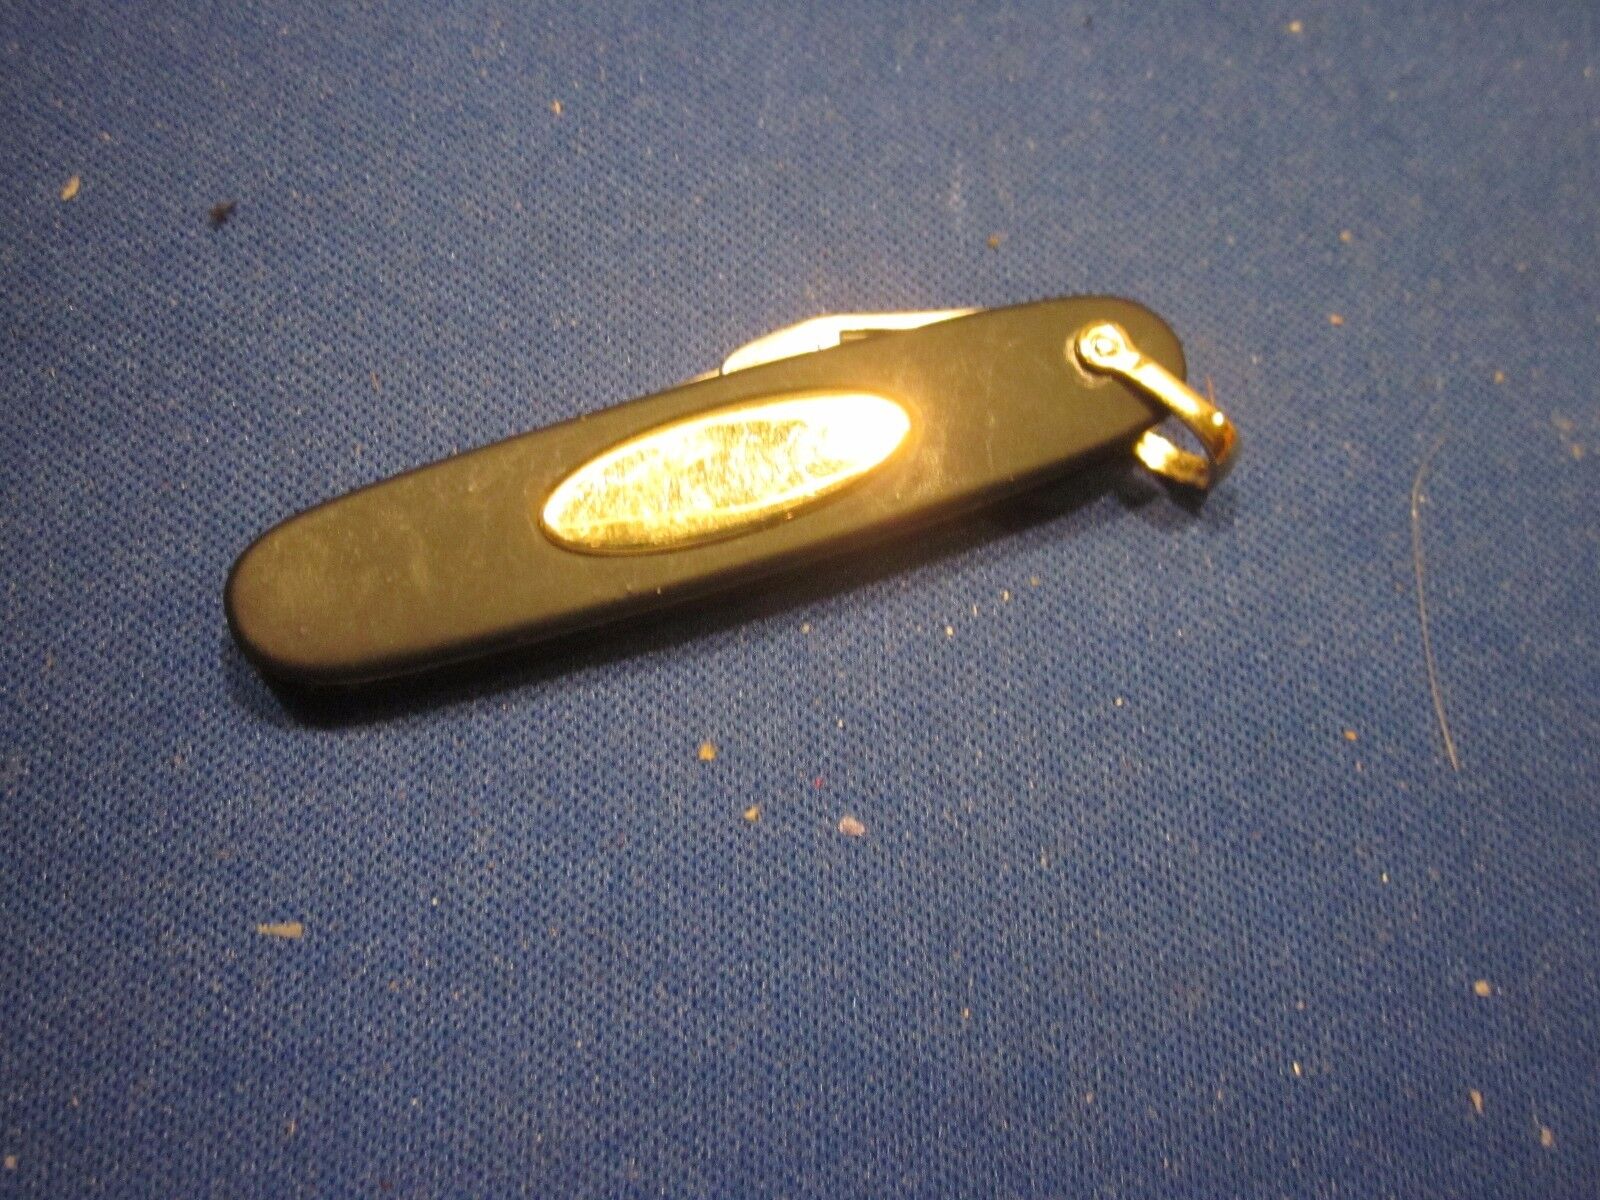 POCKET KNIFE IMPERIAL PROV. R. I. BLADE AND BOTTLE OPENER